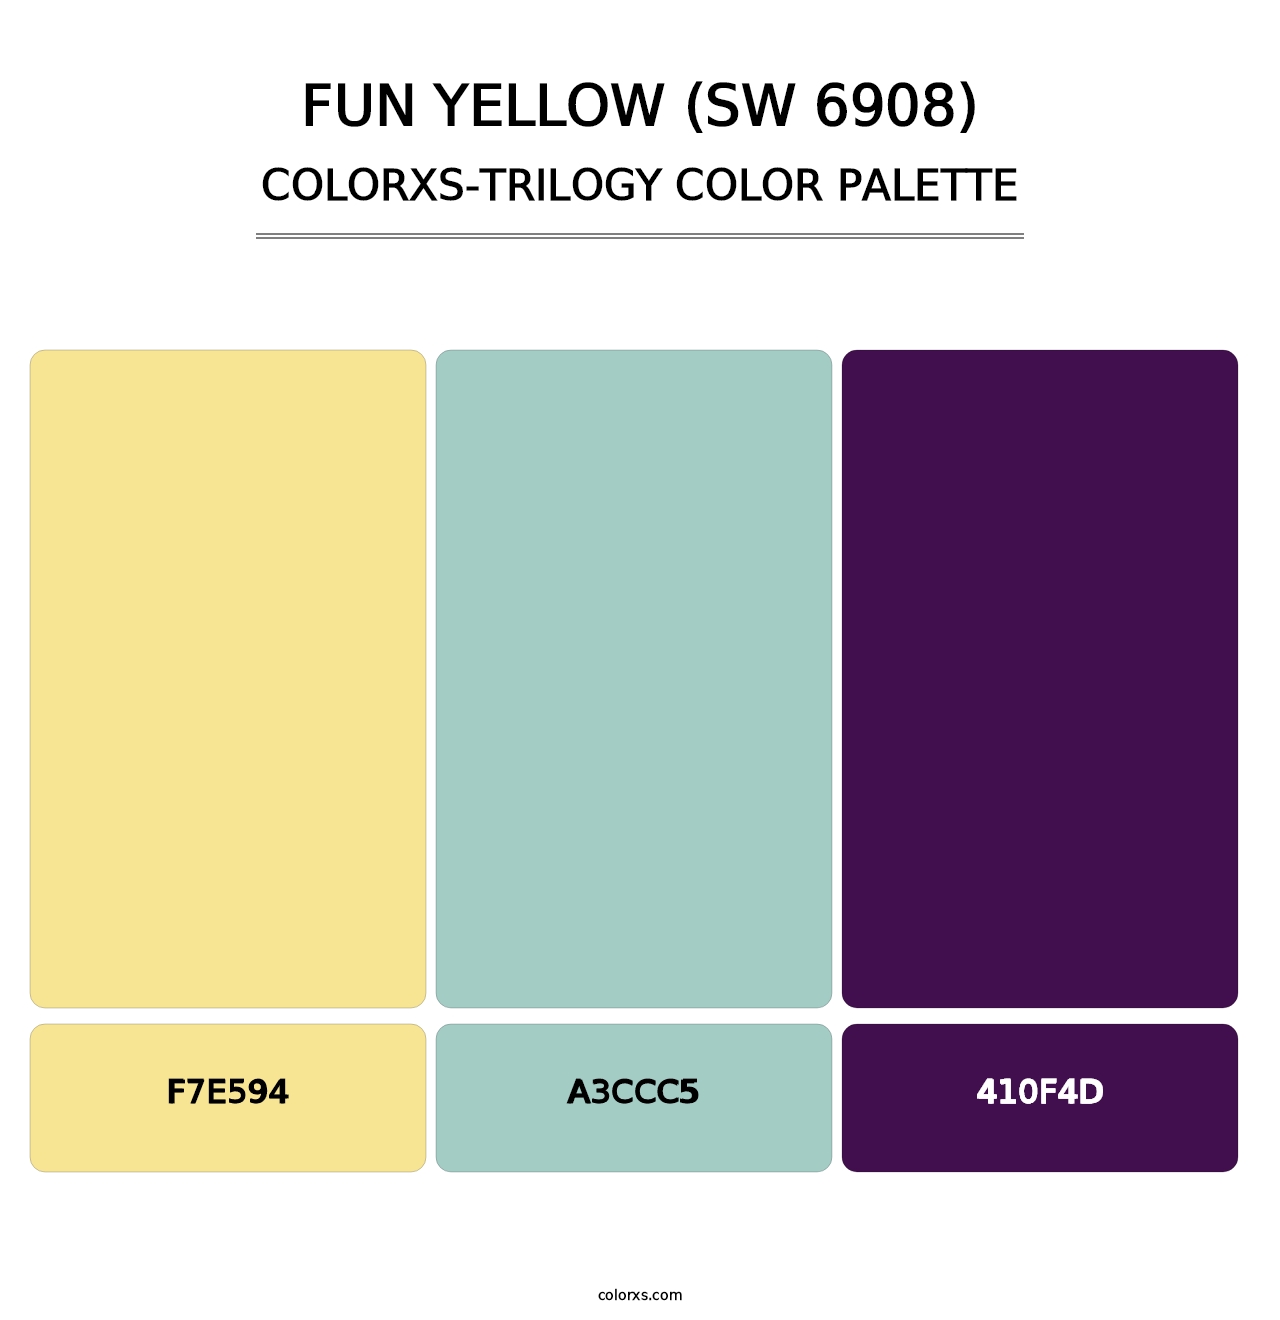 Fun Yellow (SW 6908) - Colorxs Trilogy Palette